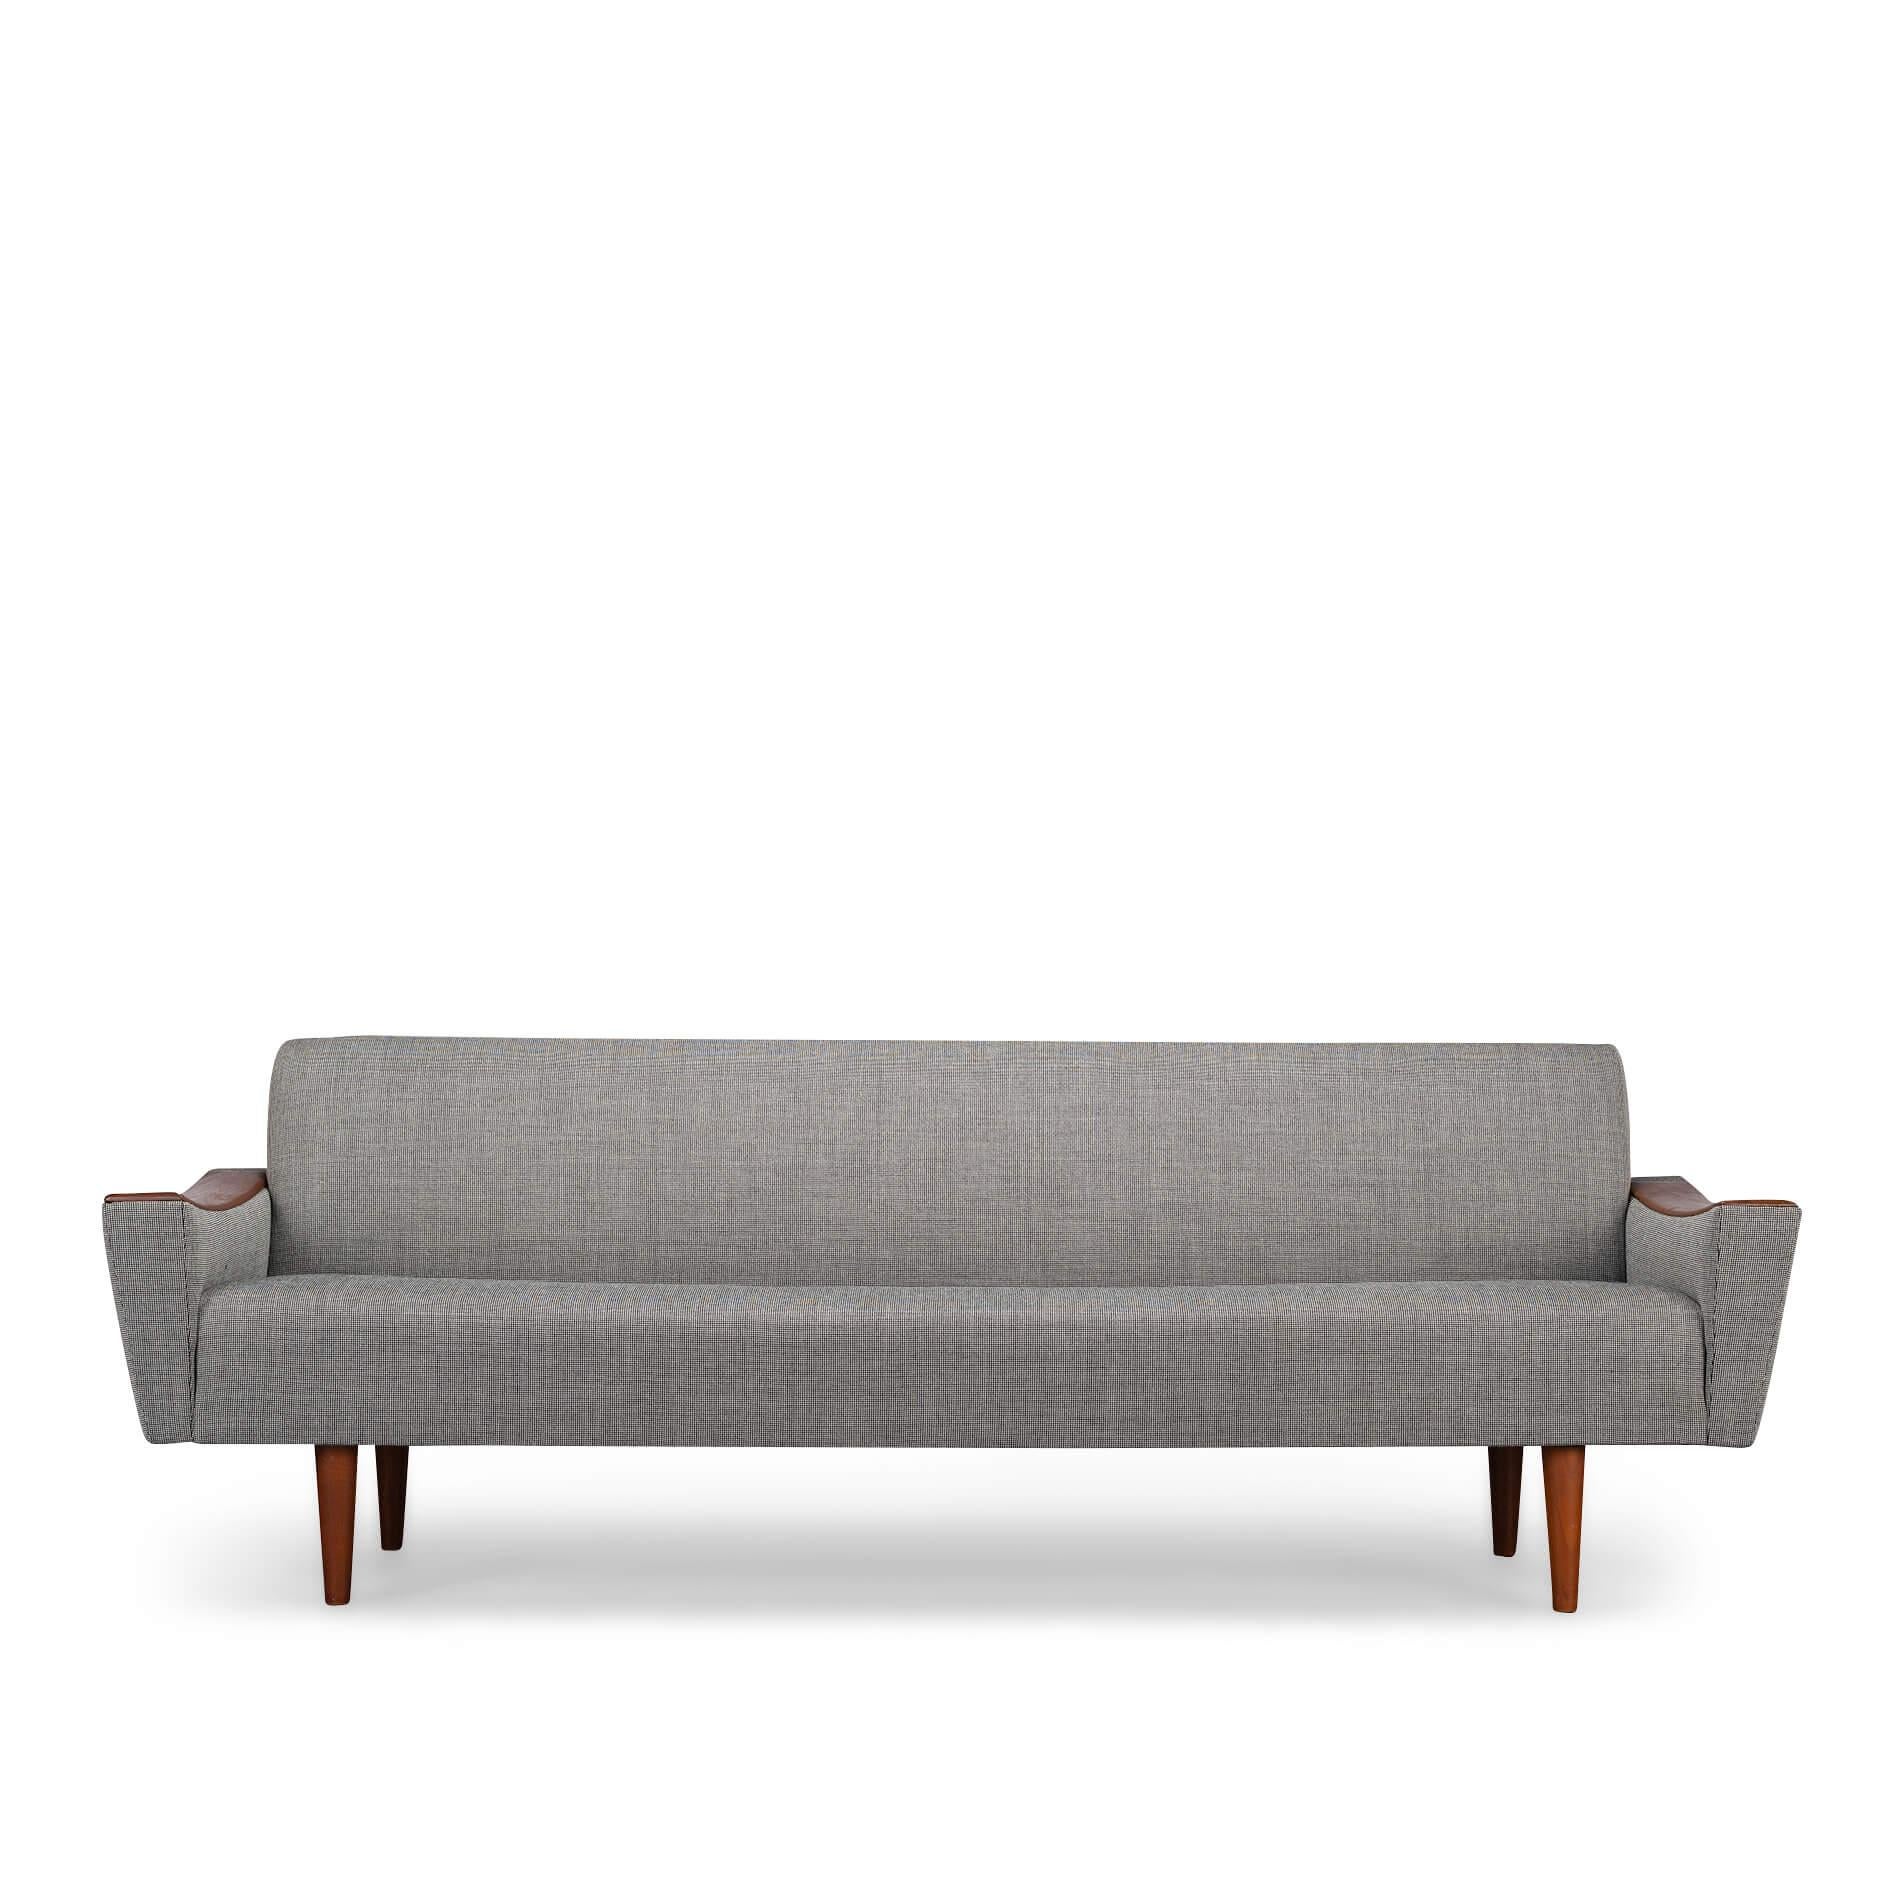 Stilvolles, großes Sofa von CFC Silkeborg in einer wunderschönen neuen Polsterung in voller Übereinstimmung mit der Originalpolsterung. Dieses Sofa hat eine geräumige, aber gerade Sitzfläche. Ergonomisch sehr gut geeignet, um Gespräche und